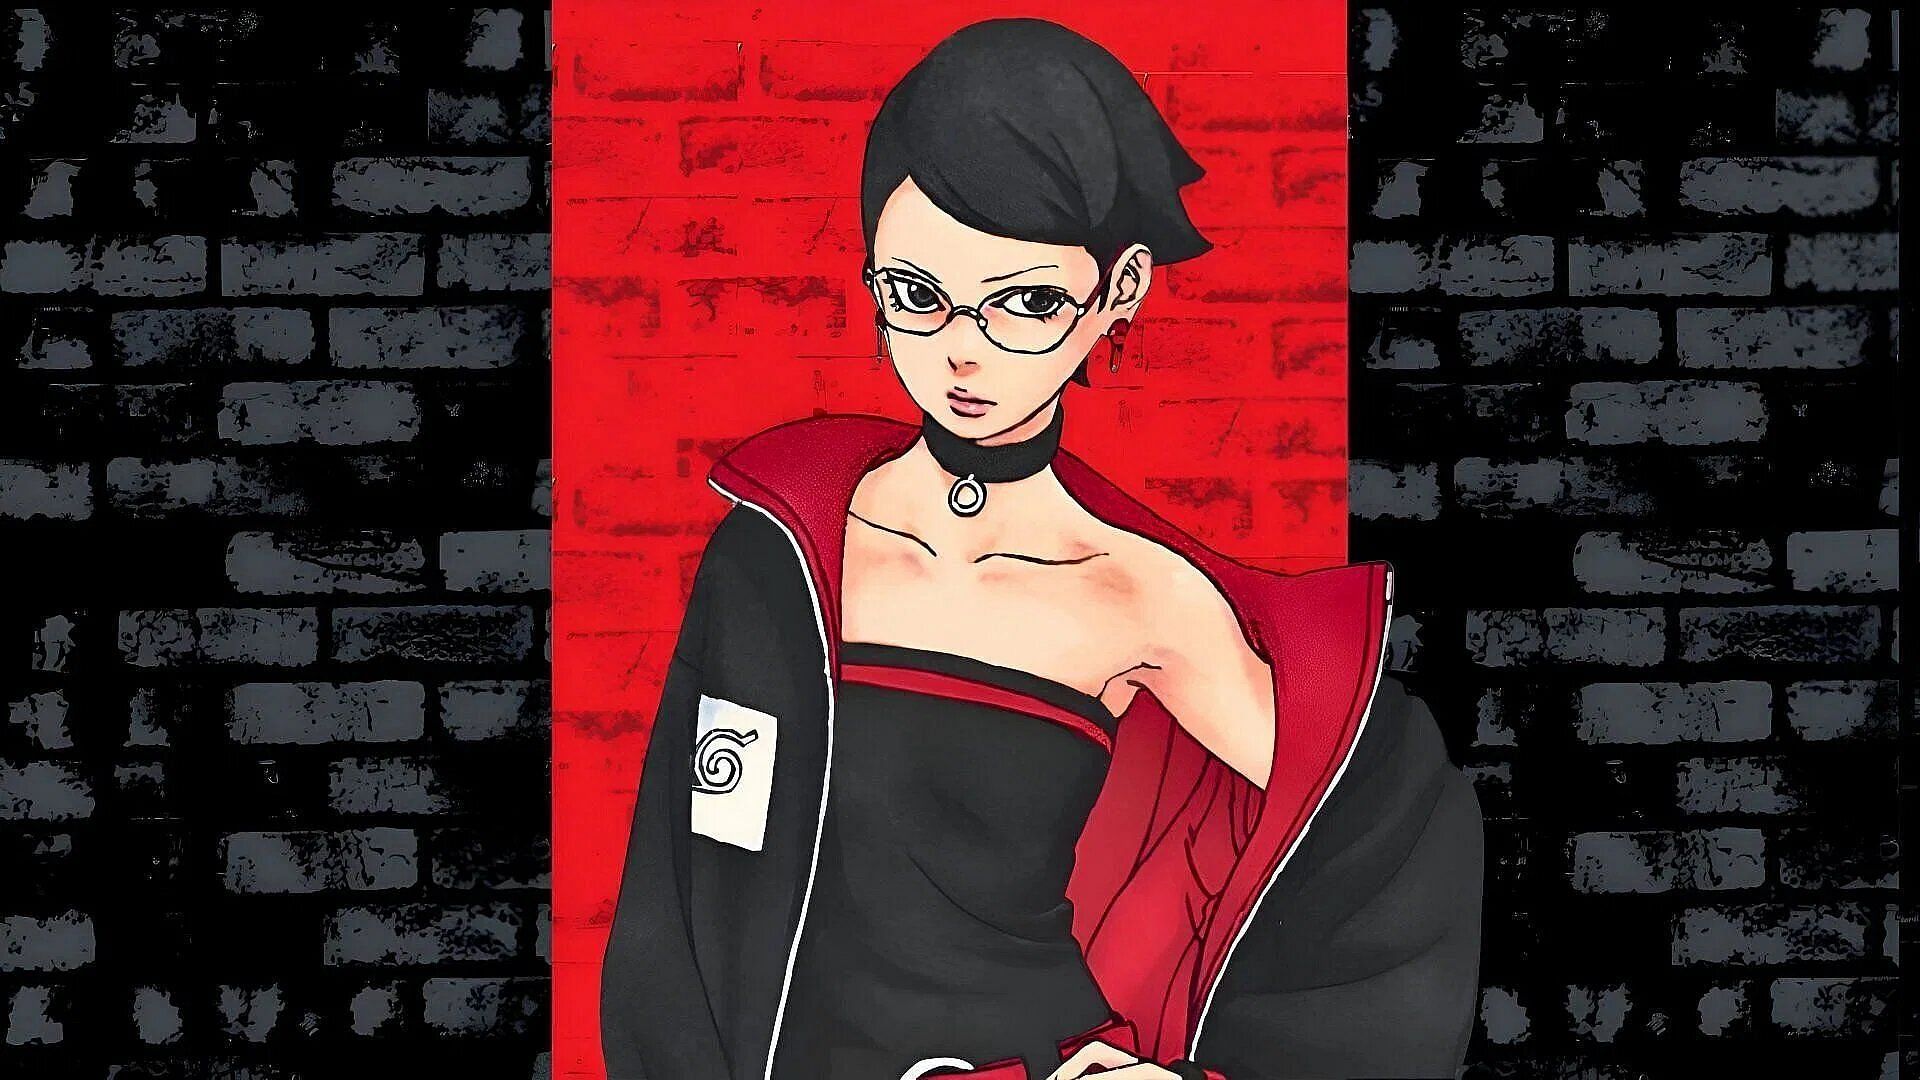 Sarada as seen in the manga series (Image via Shueisha)